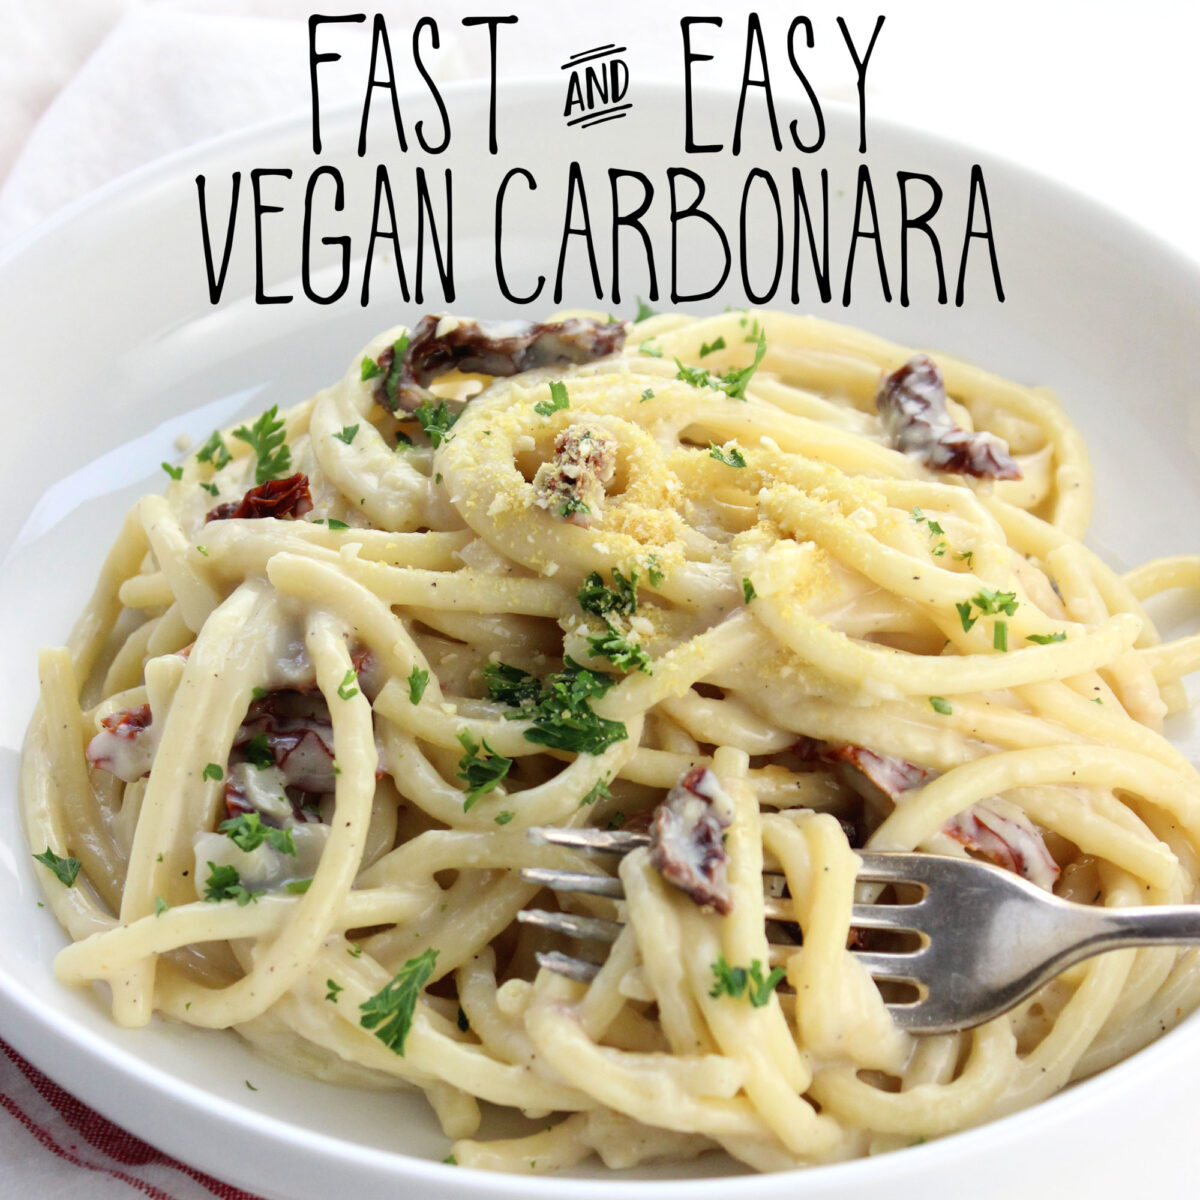 Fast and Easy Vegan Carbonara